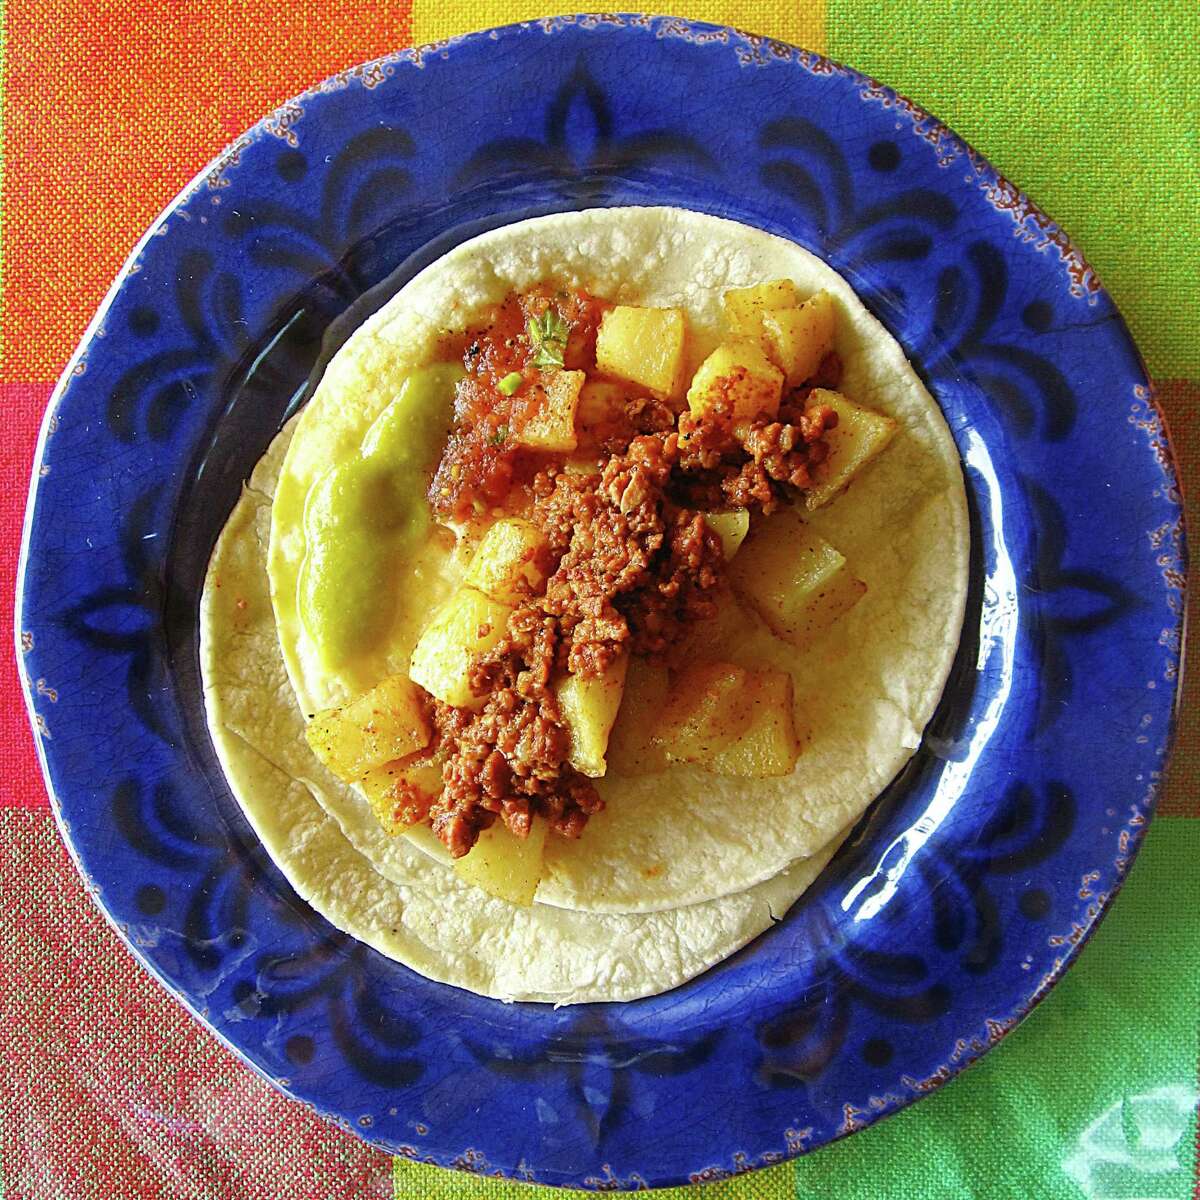 Chorizo and potato taco on corn tortillas from Picosito Mexican Cuisine.